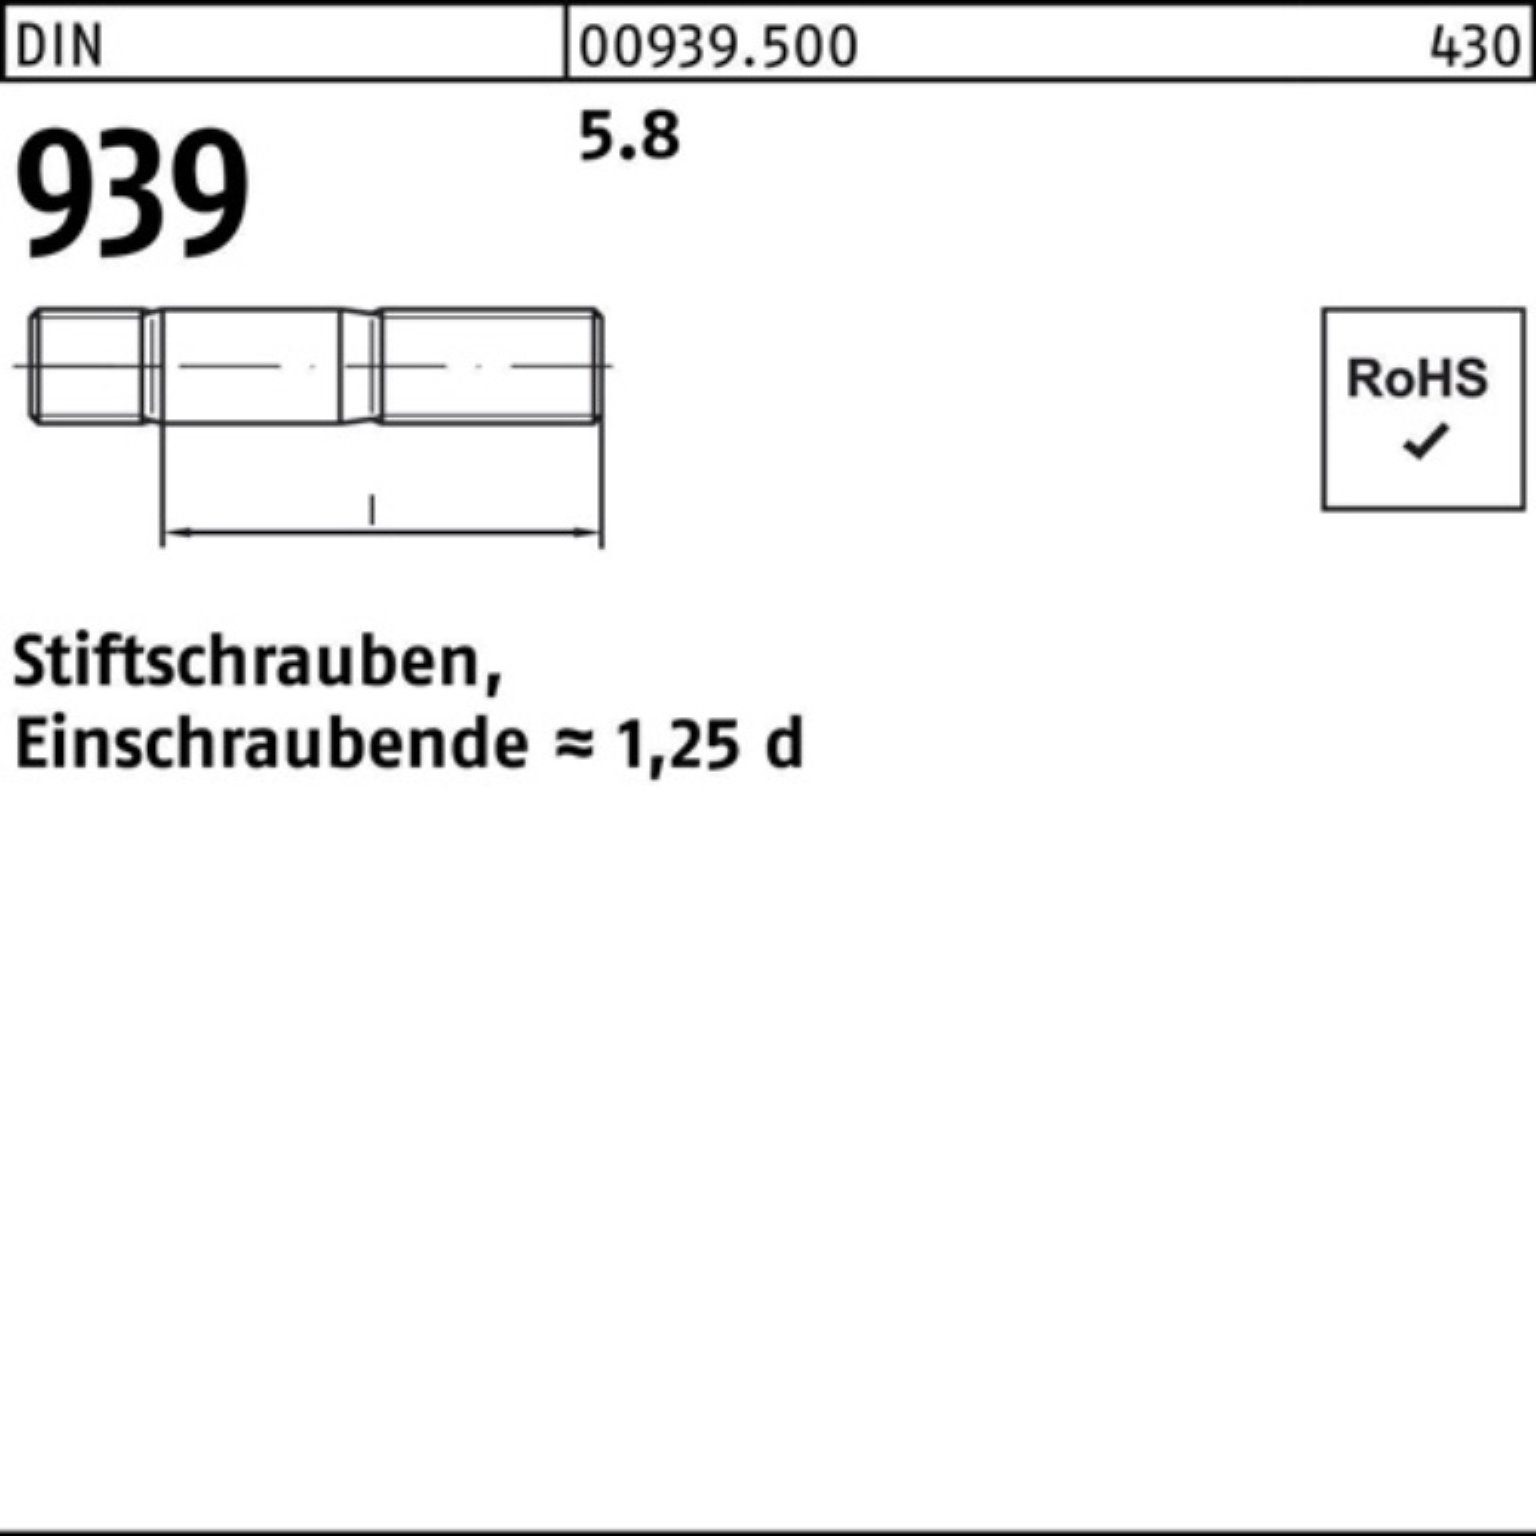 M24x Pack 5.8 S Einschraubende=1,25d Stiftschraube Reyher DIN 100er Stiftschraube 939 90 10